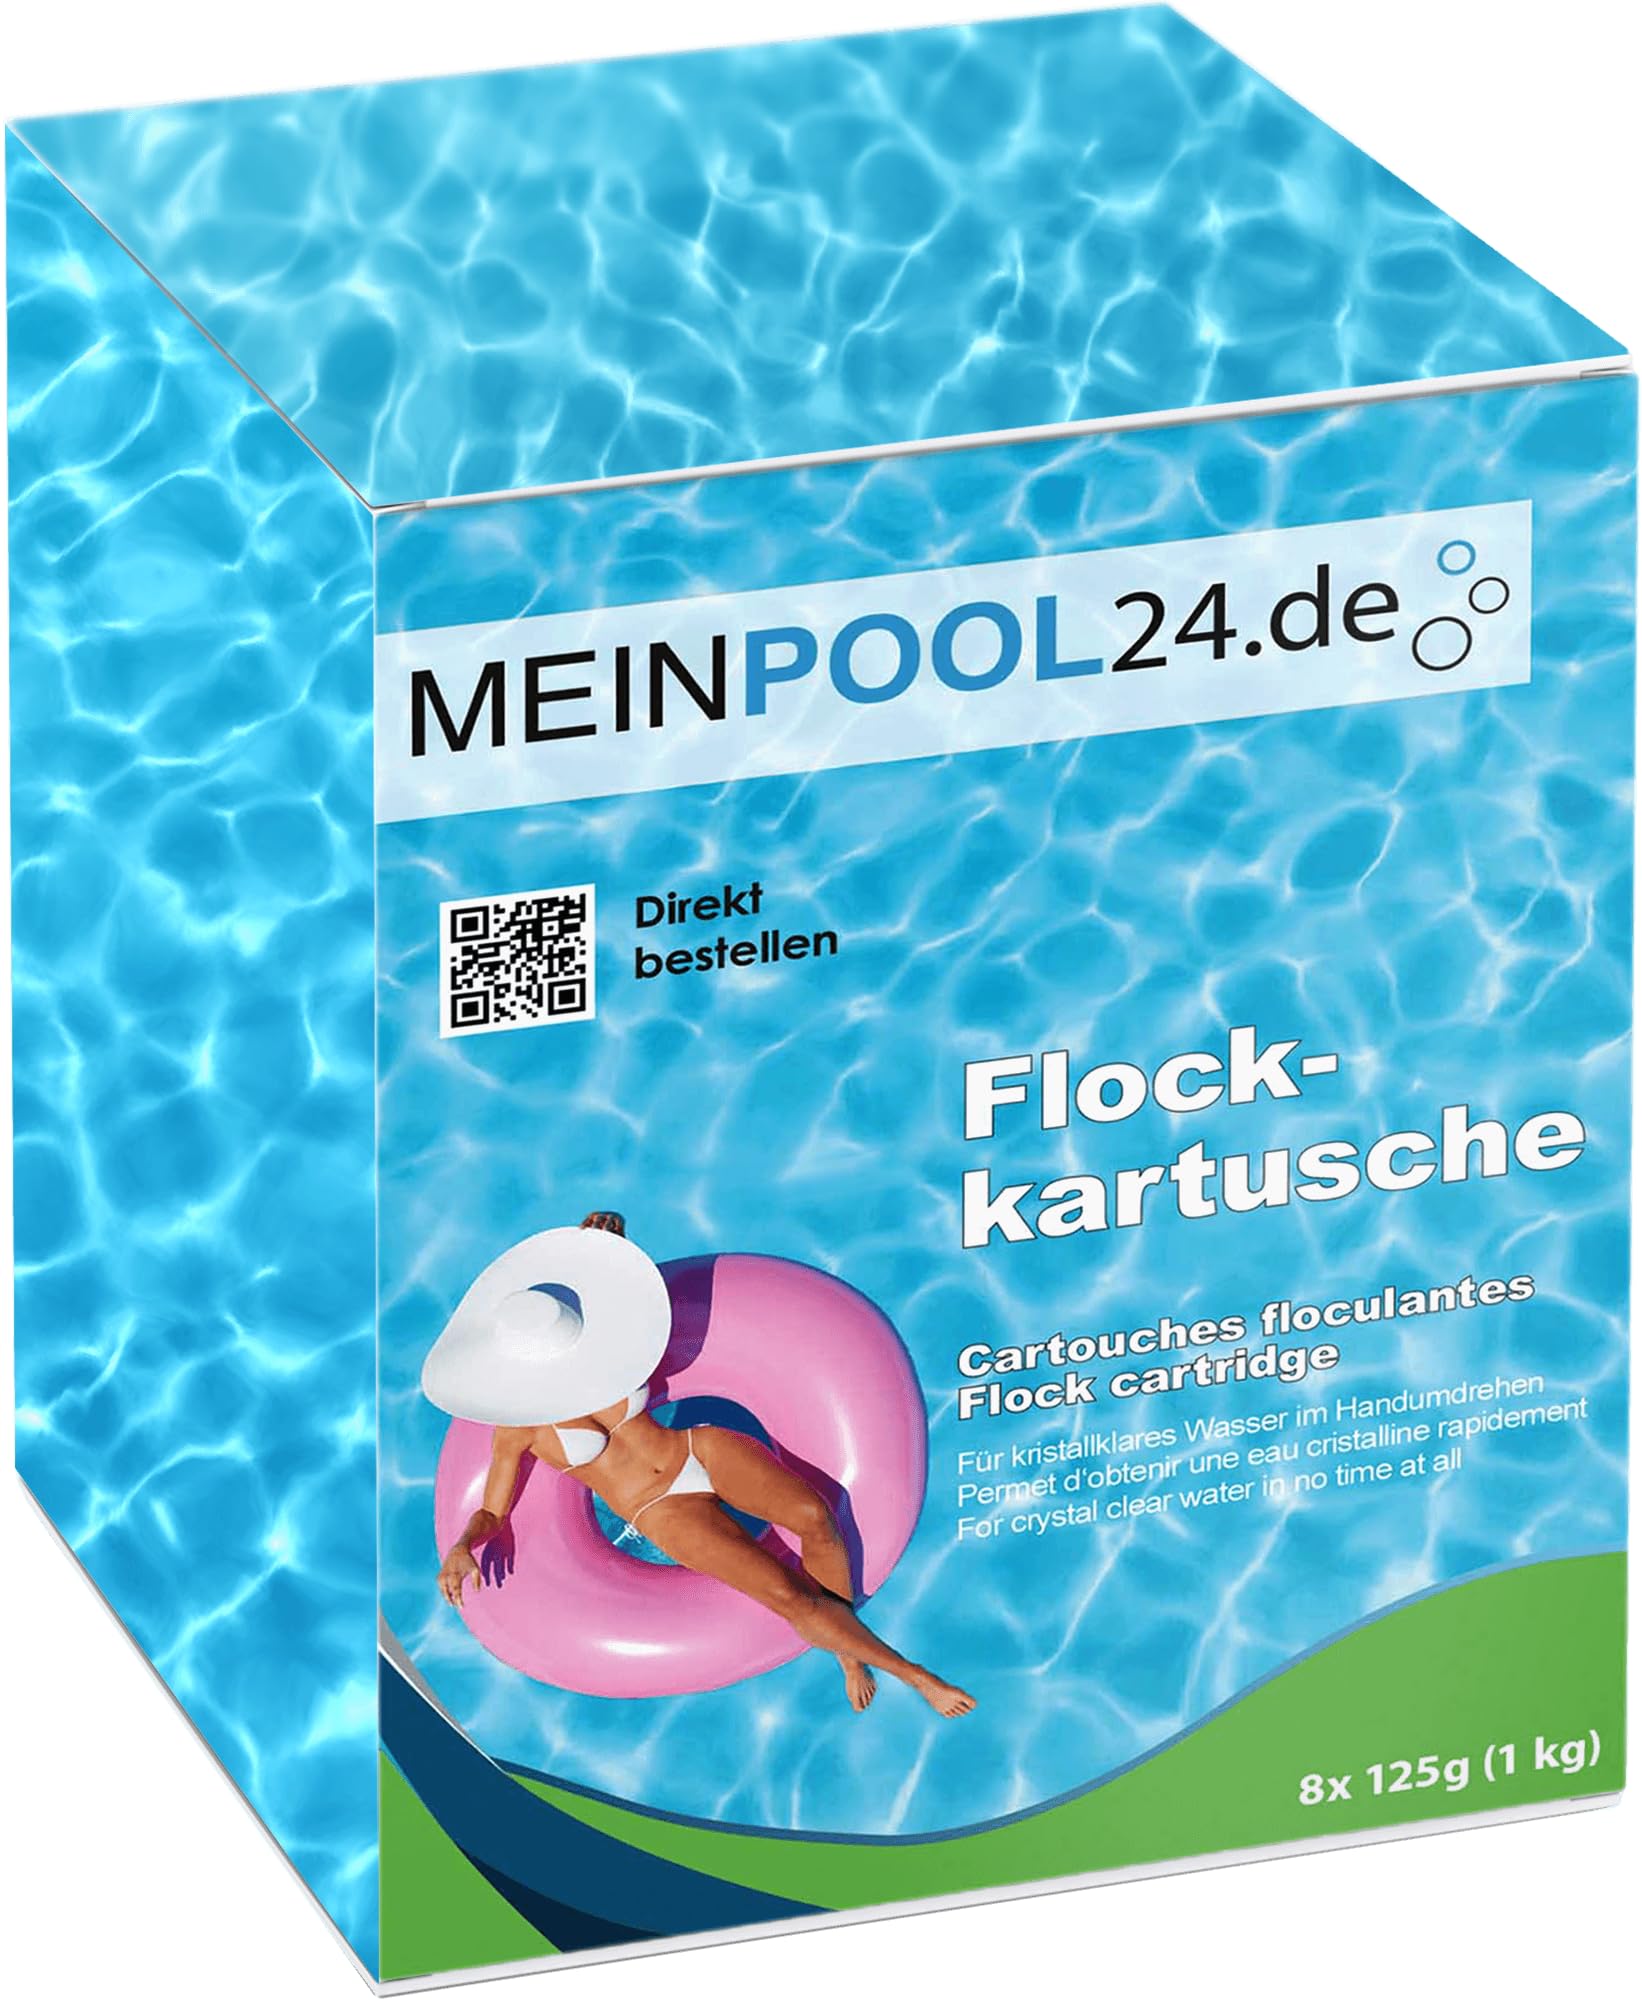 Meinpool24.de 6x1 kg Flockkartuschen Flockungs-Kartuschen für kristallklares Wasser entfernt feinste Schmutzteilchen im Pool